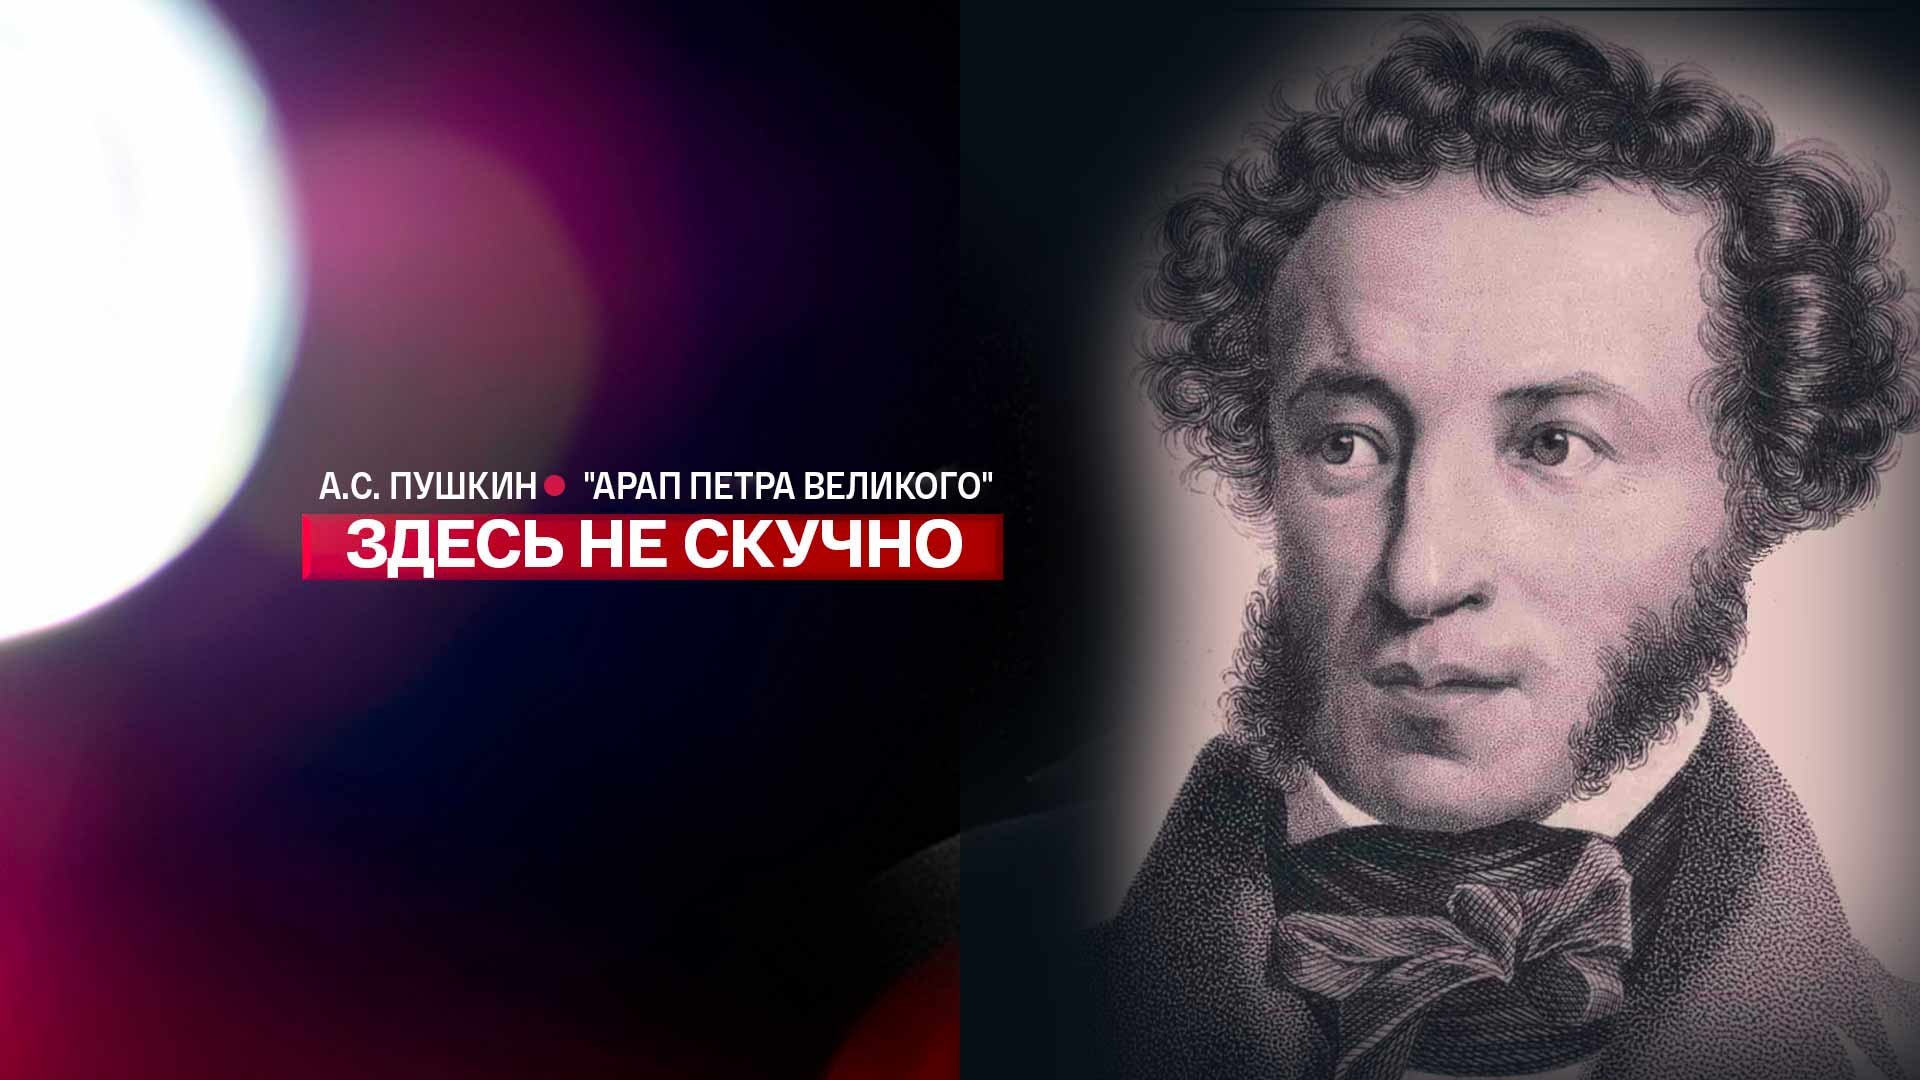 Иван Петрович Белкин Пушкин